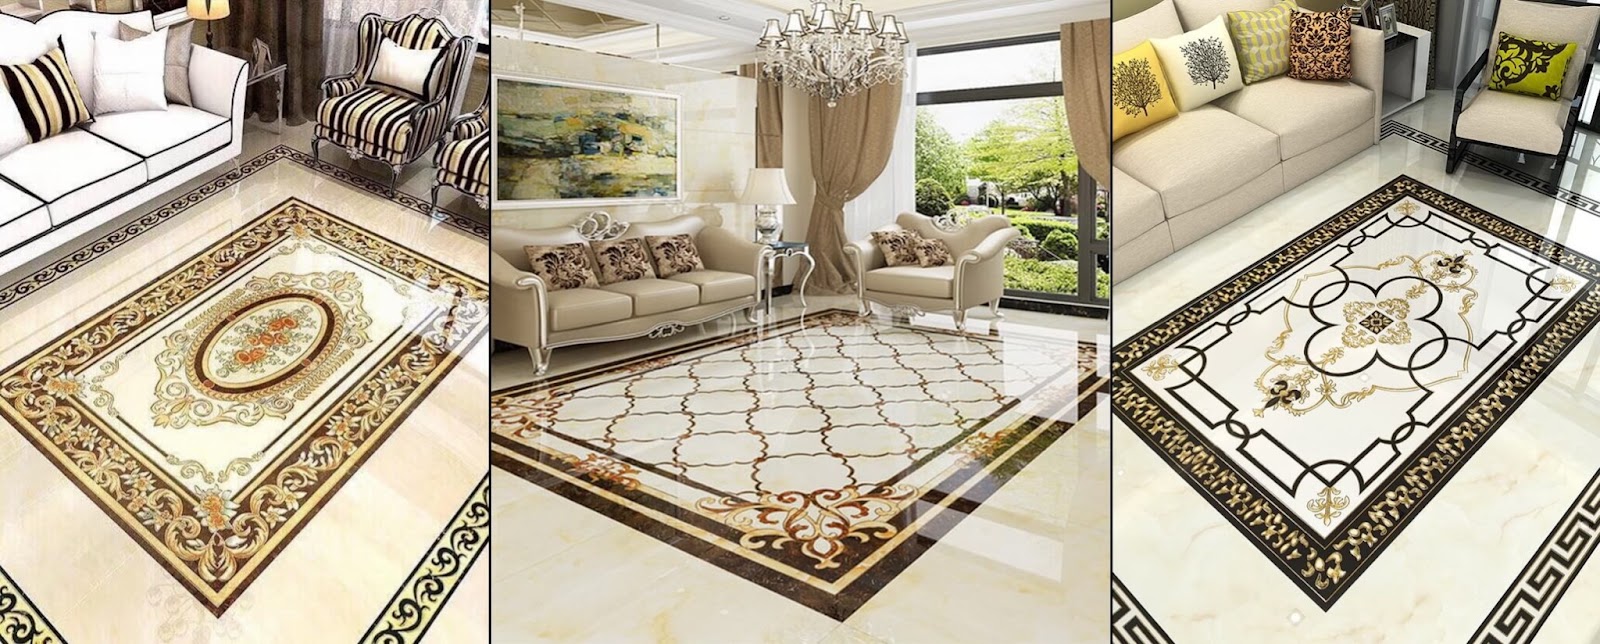 sử dụng gạch thảm trang trí không gian phòng khách